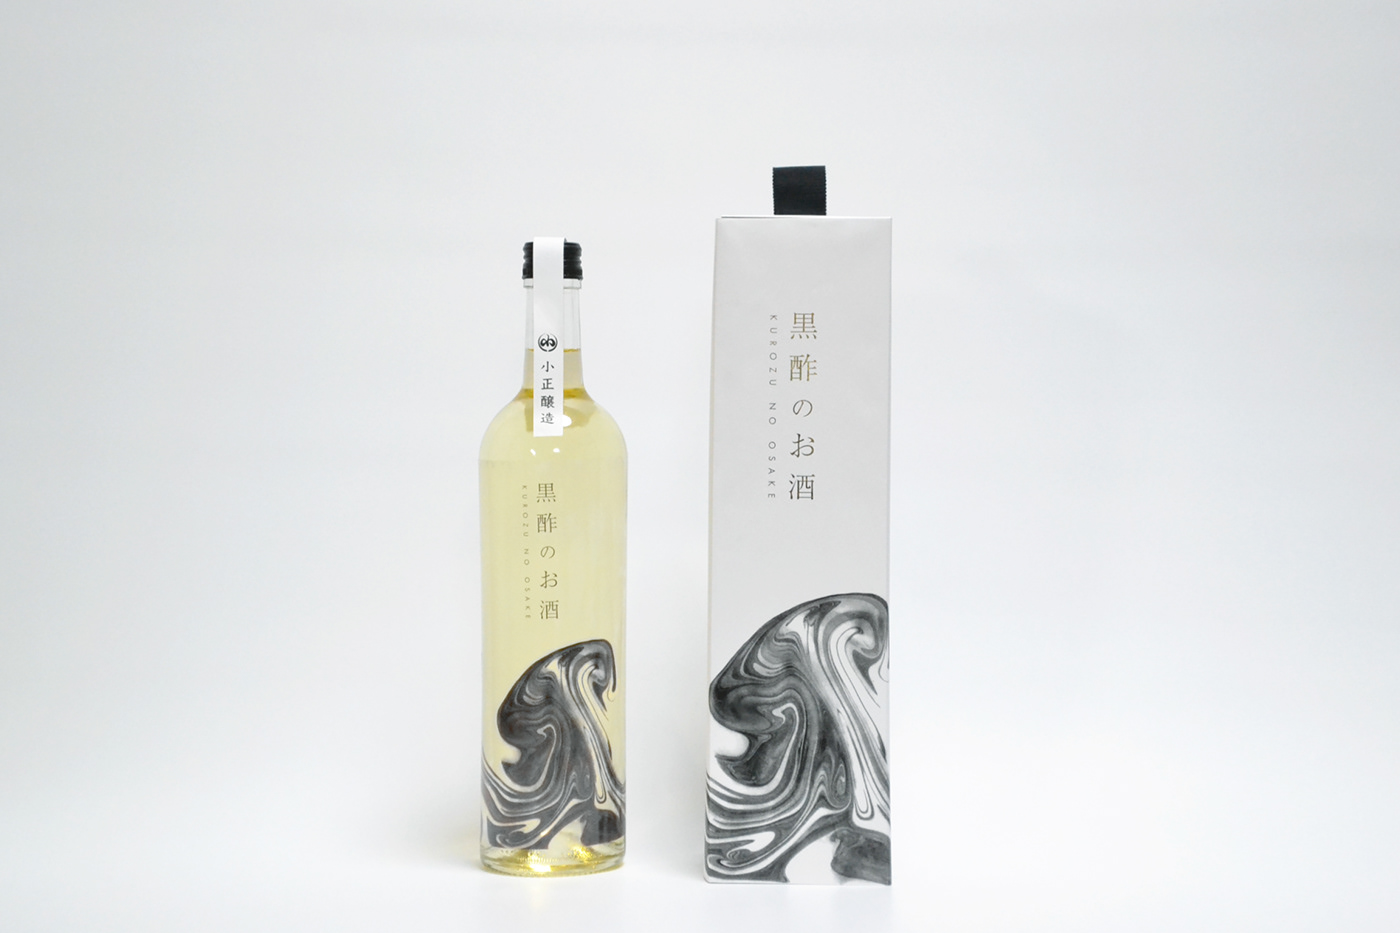 branding  Packaging Sake minimal japan alcohol black and white aesthetic label design adobeawards